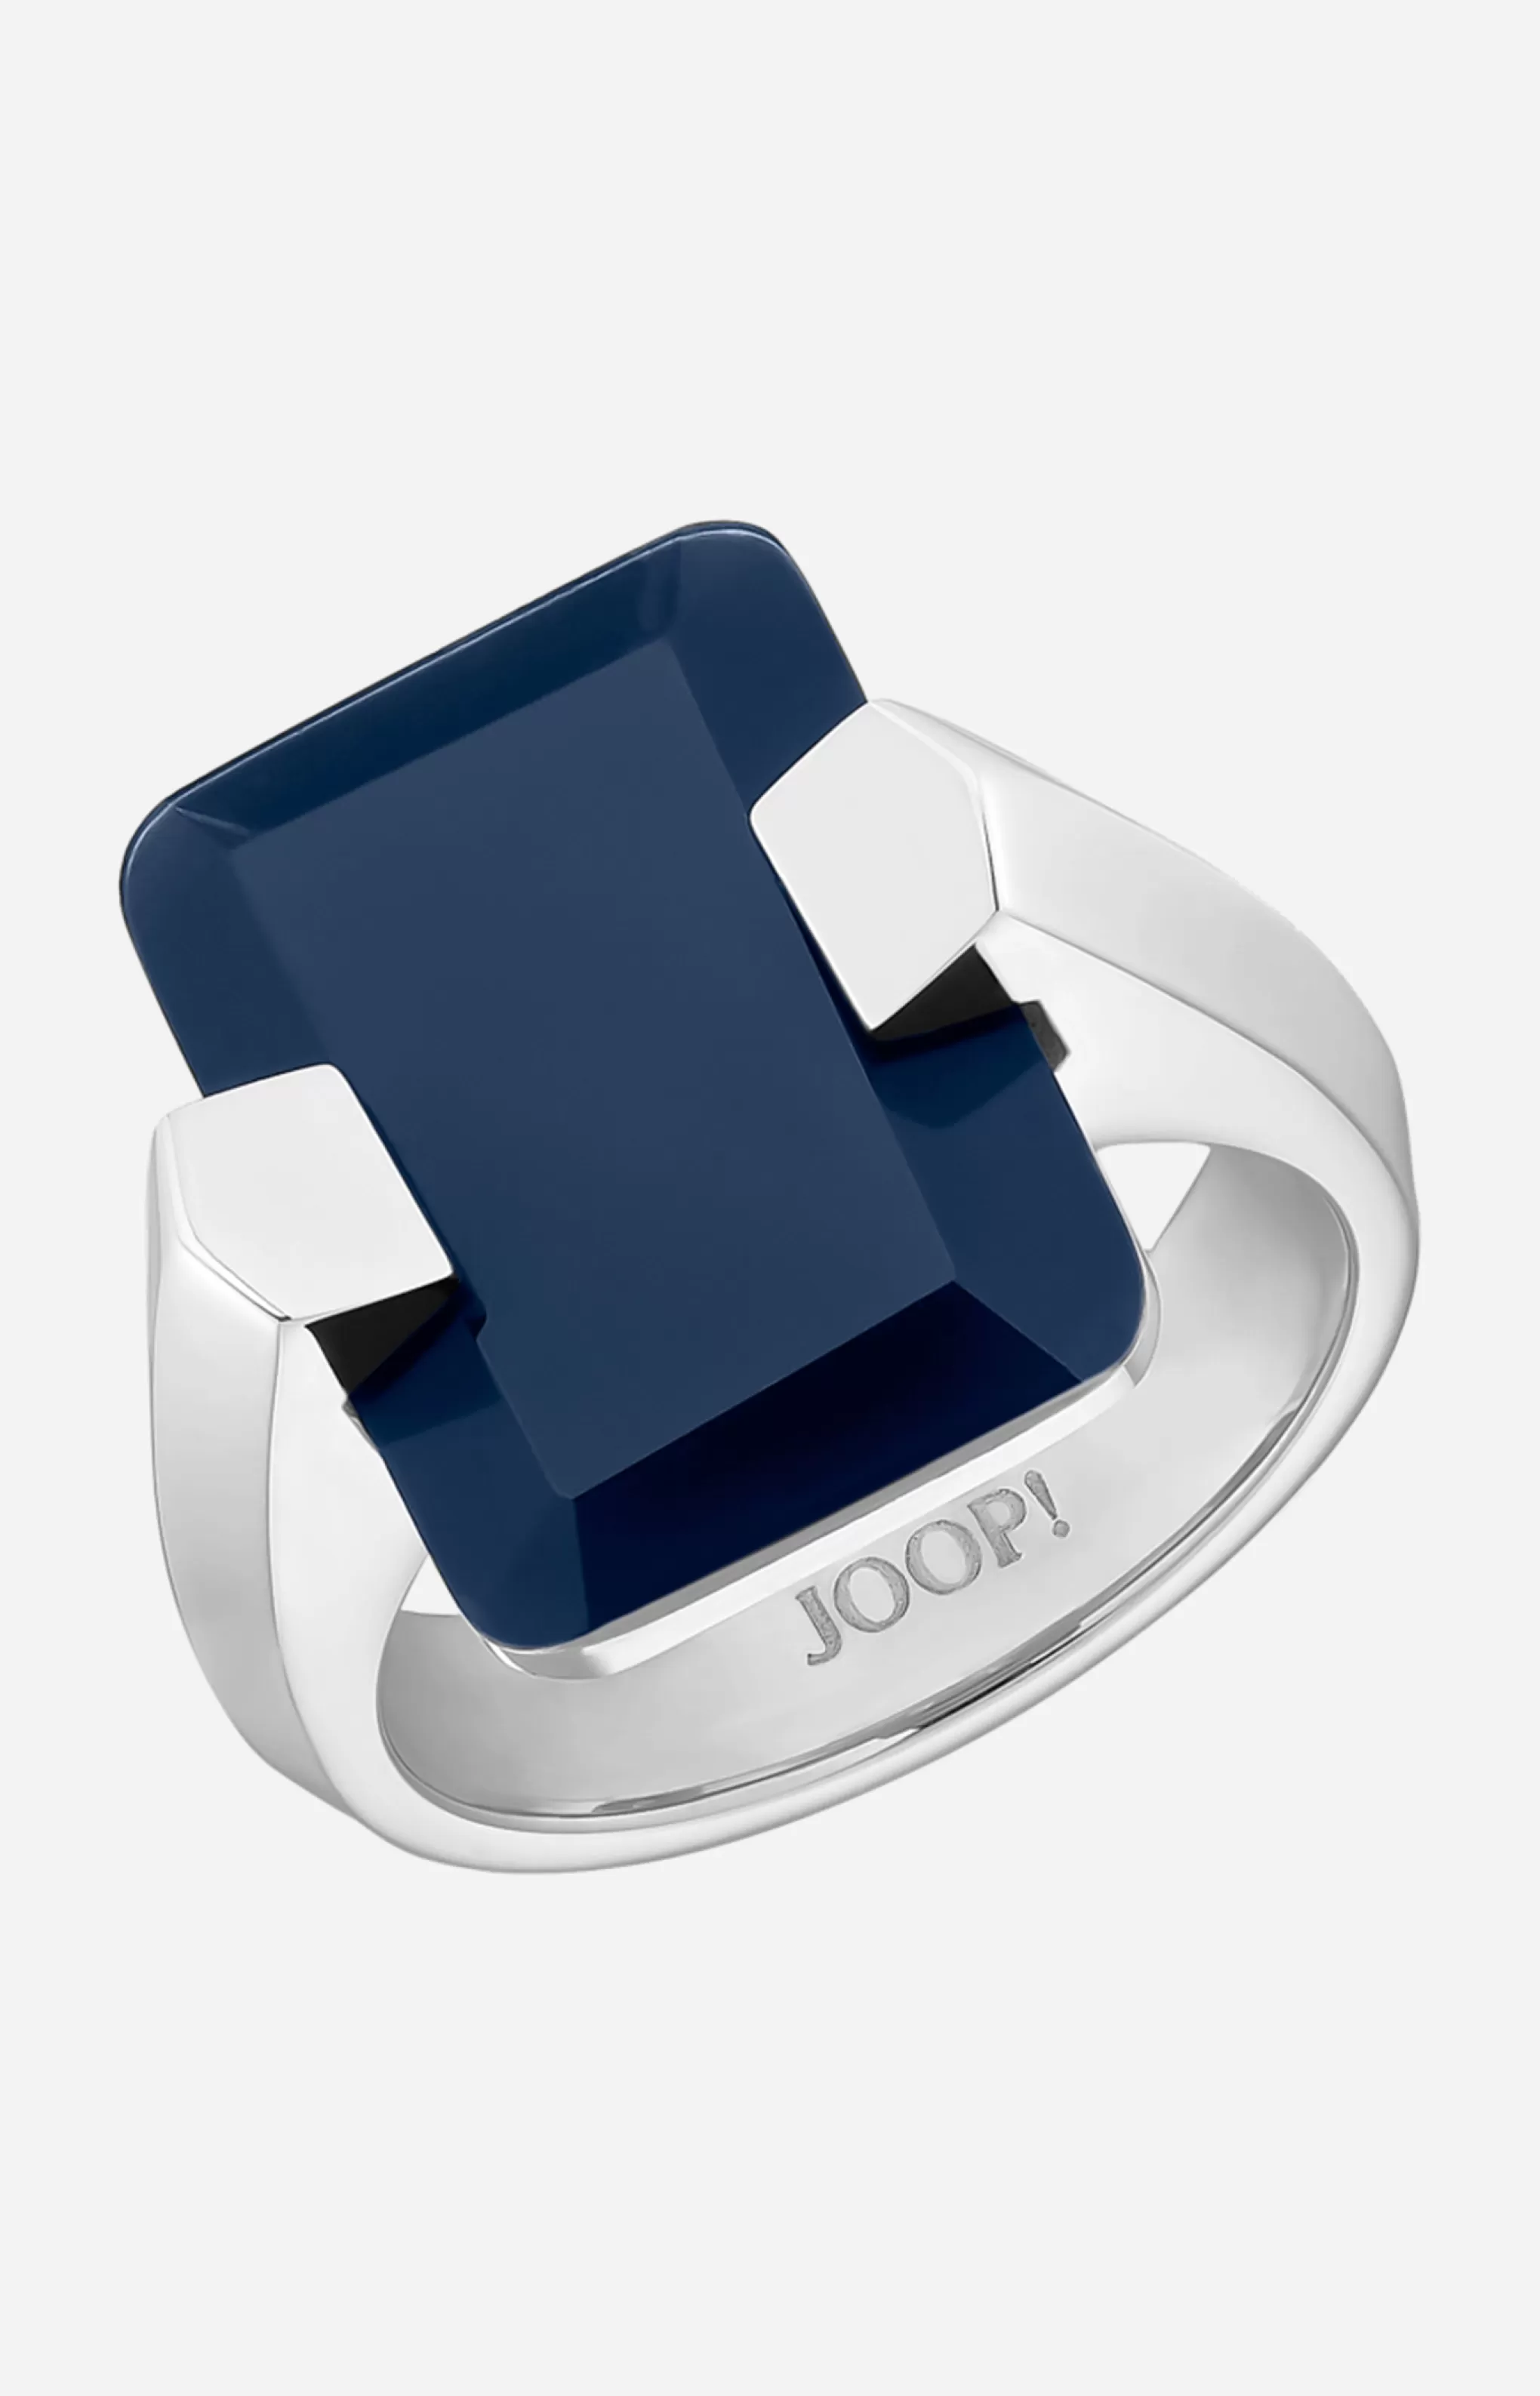 Rings | Jewellery*JOOP Rings | Jewellery Ring in